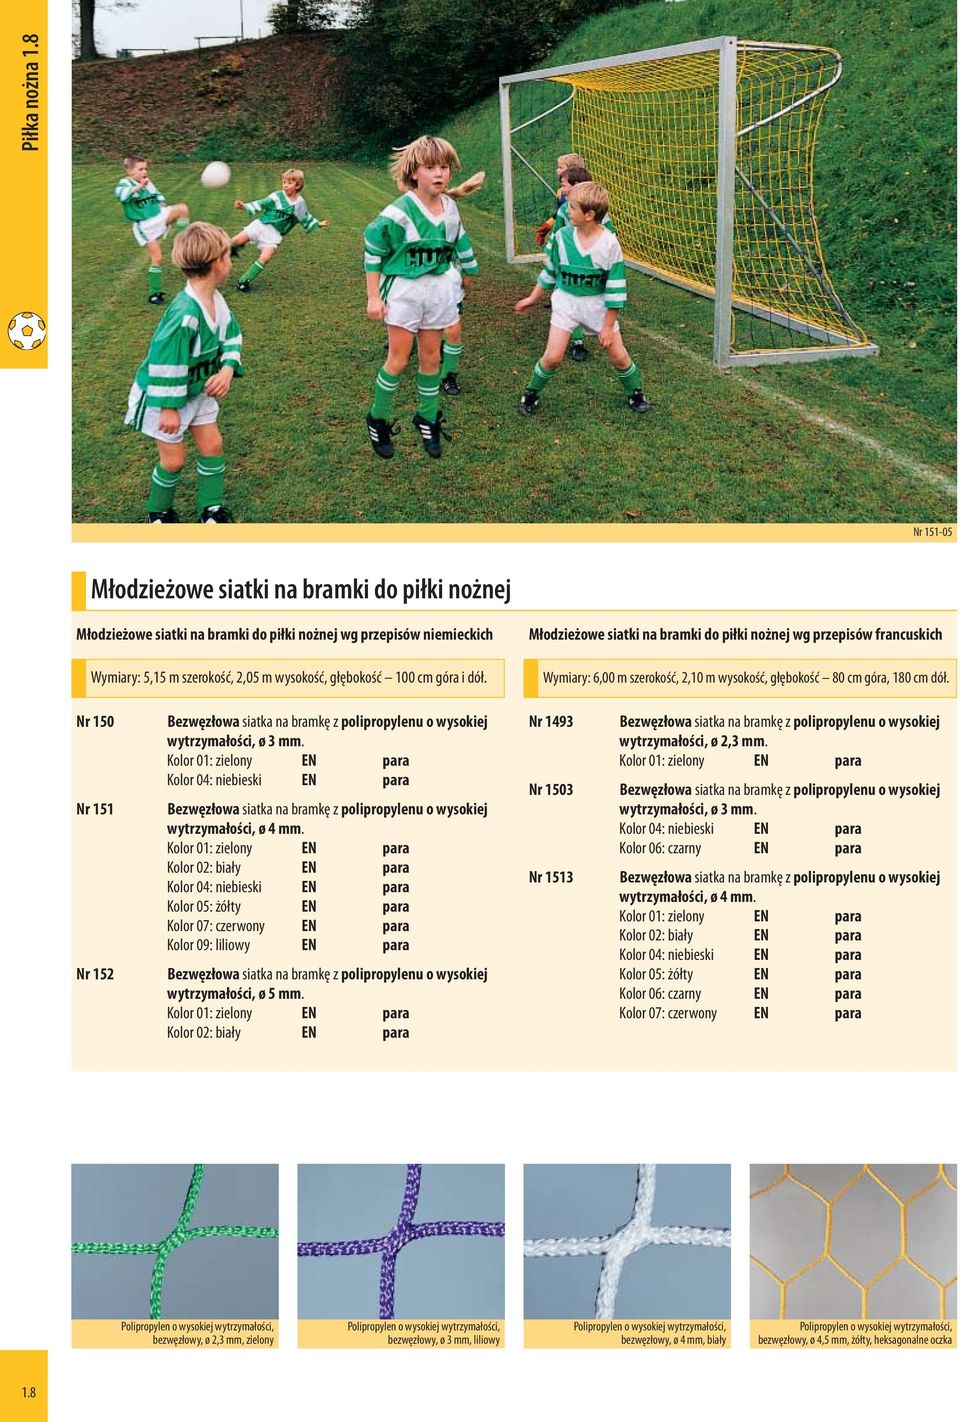 Młodzieżowe siatki na bramki do piłki nożnej wg przepisów francuskich Wymiary: 6,00 m szerokość, 2,10 m wysokość, głębokość 80 cm góra, 180 cm dół.